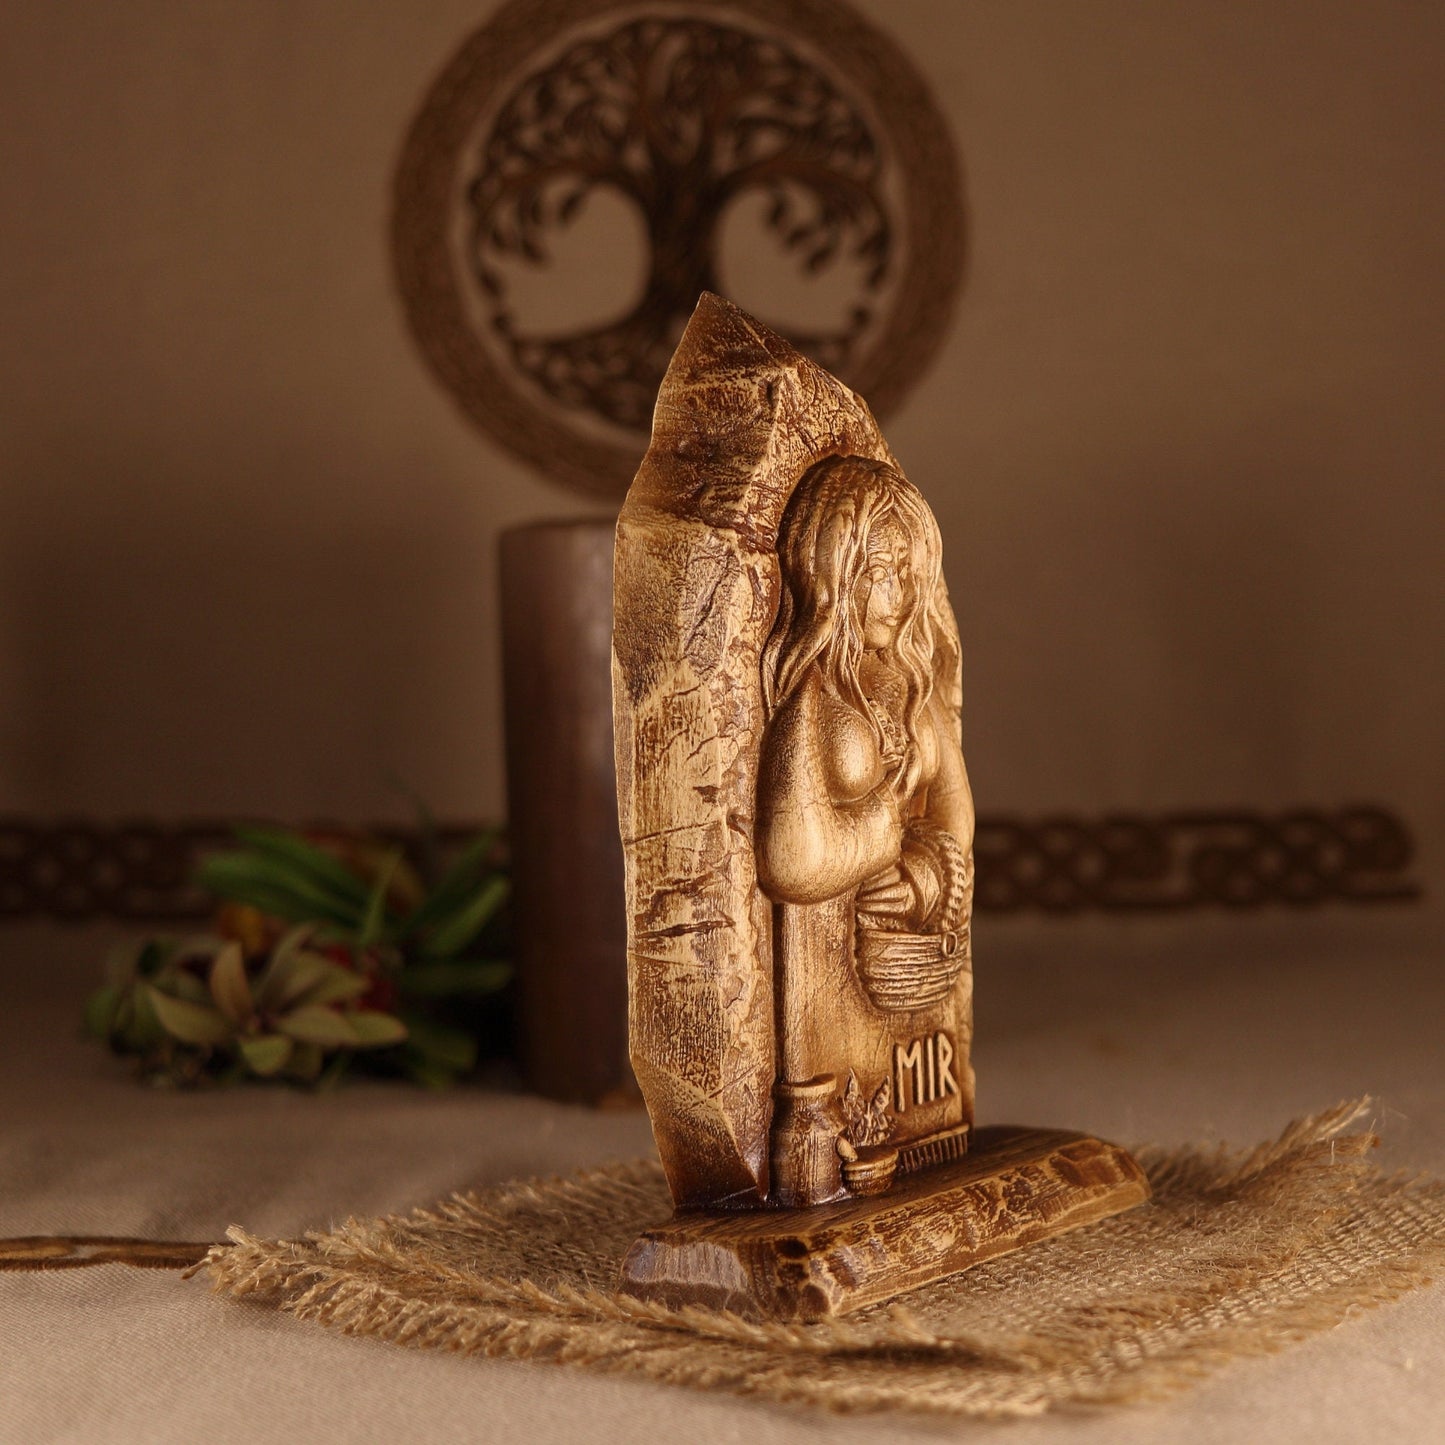 Eir, Norse pagan mini altar, wood sculpture art